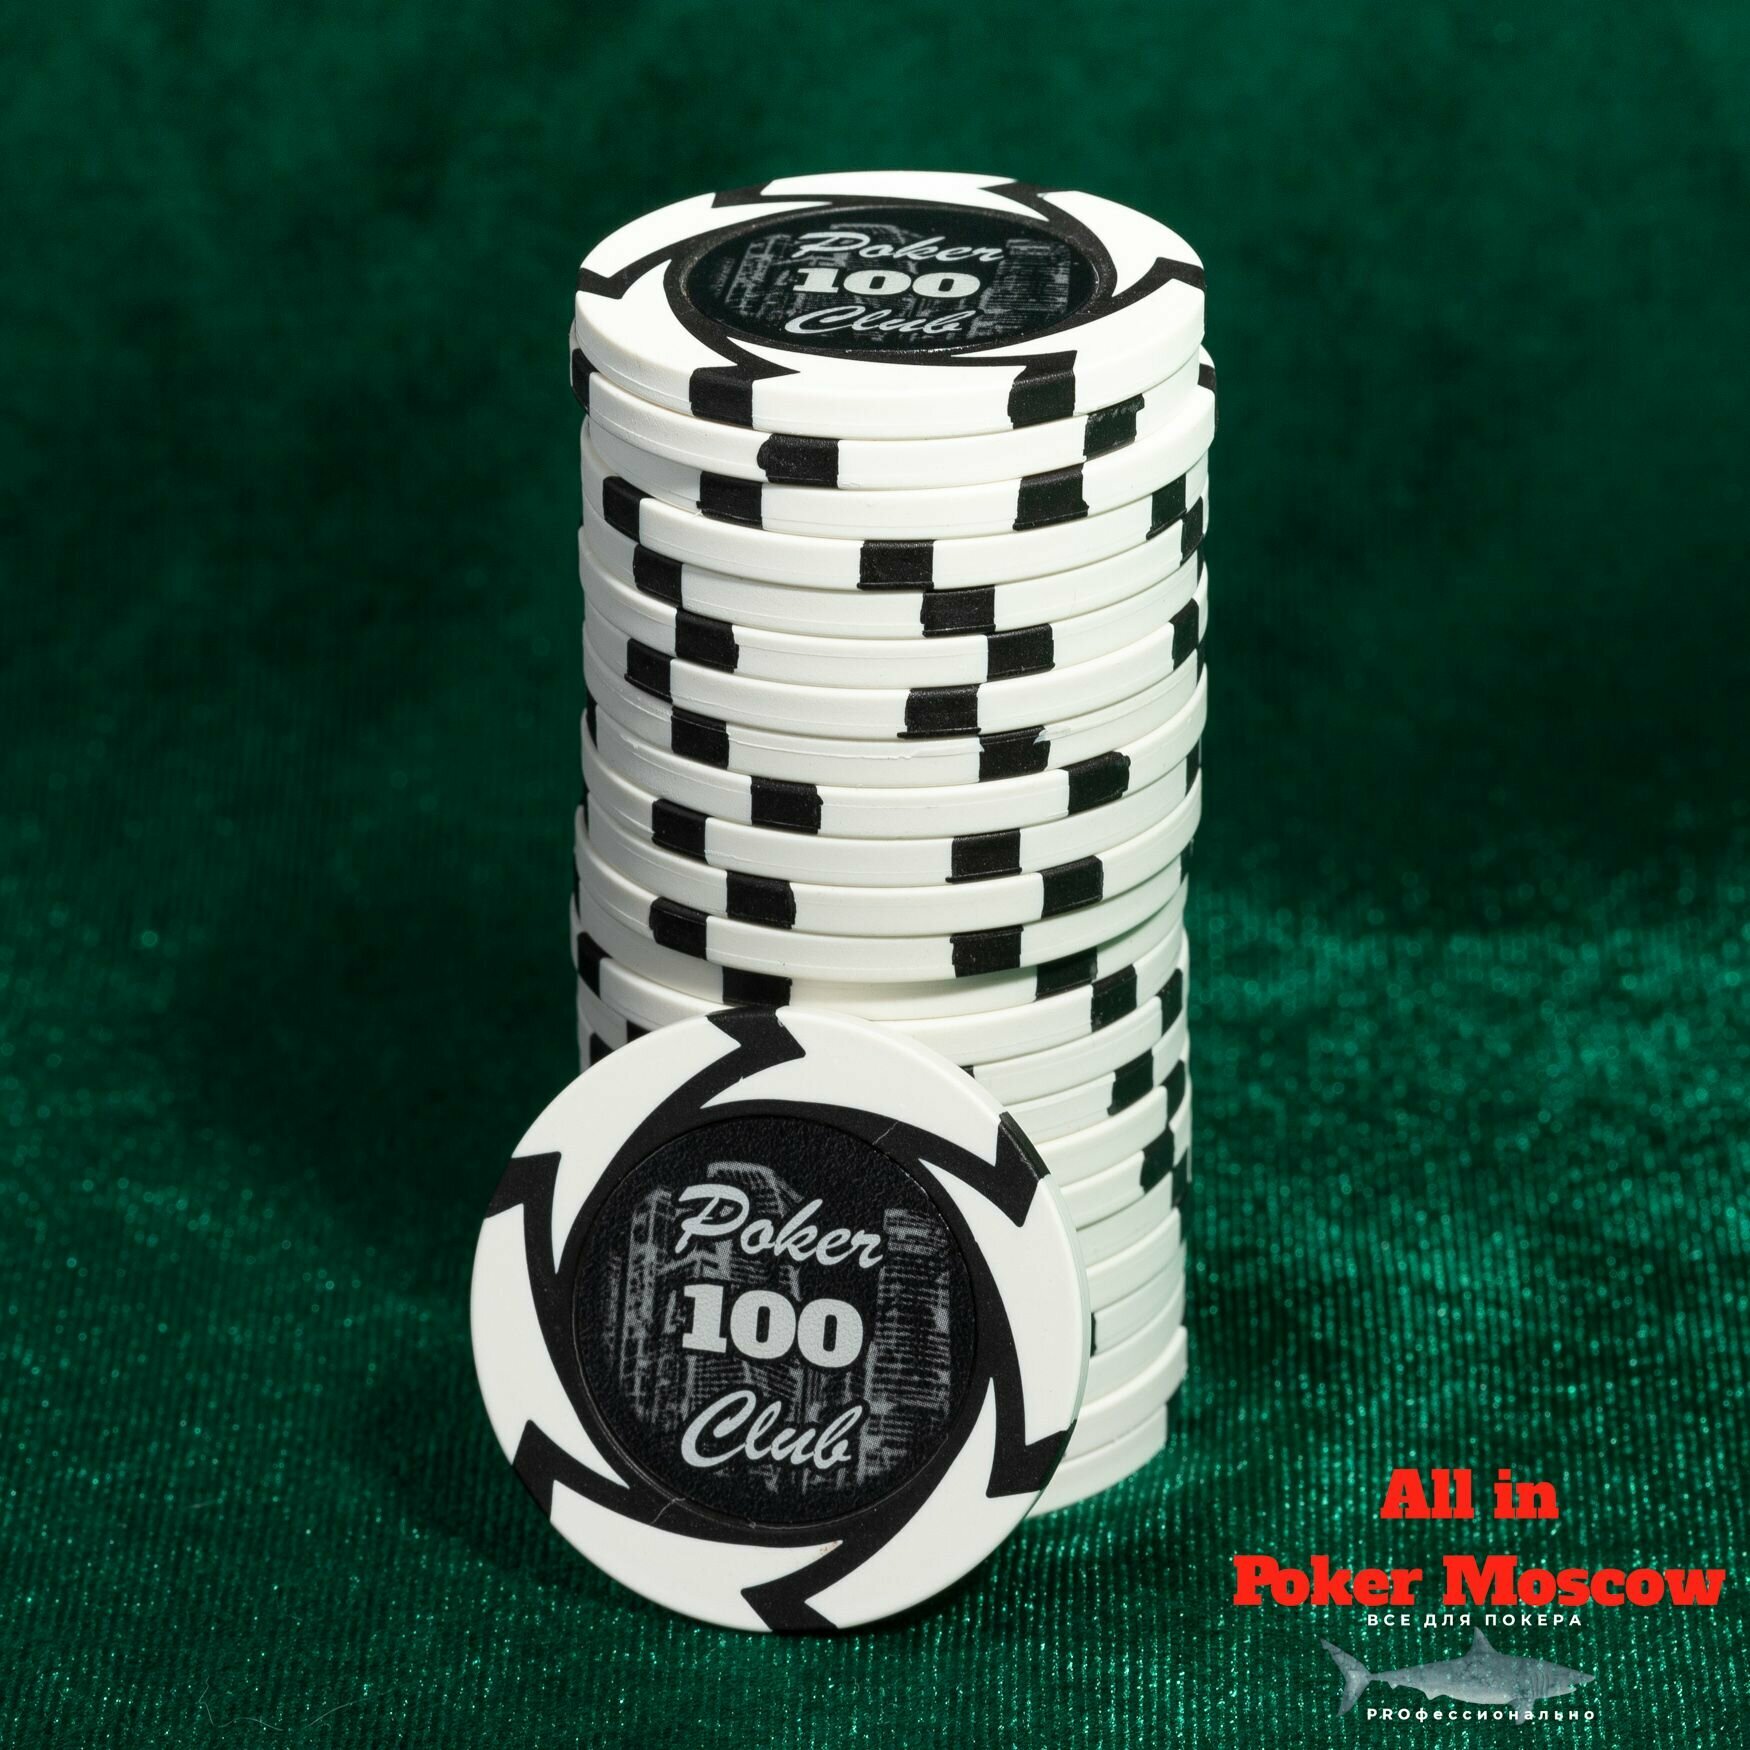 Фишки для покера номинал 100 Белые 25 шт